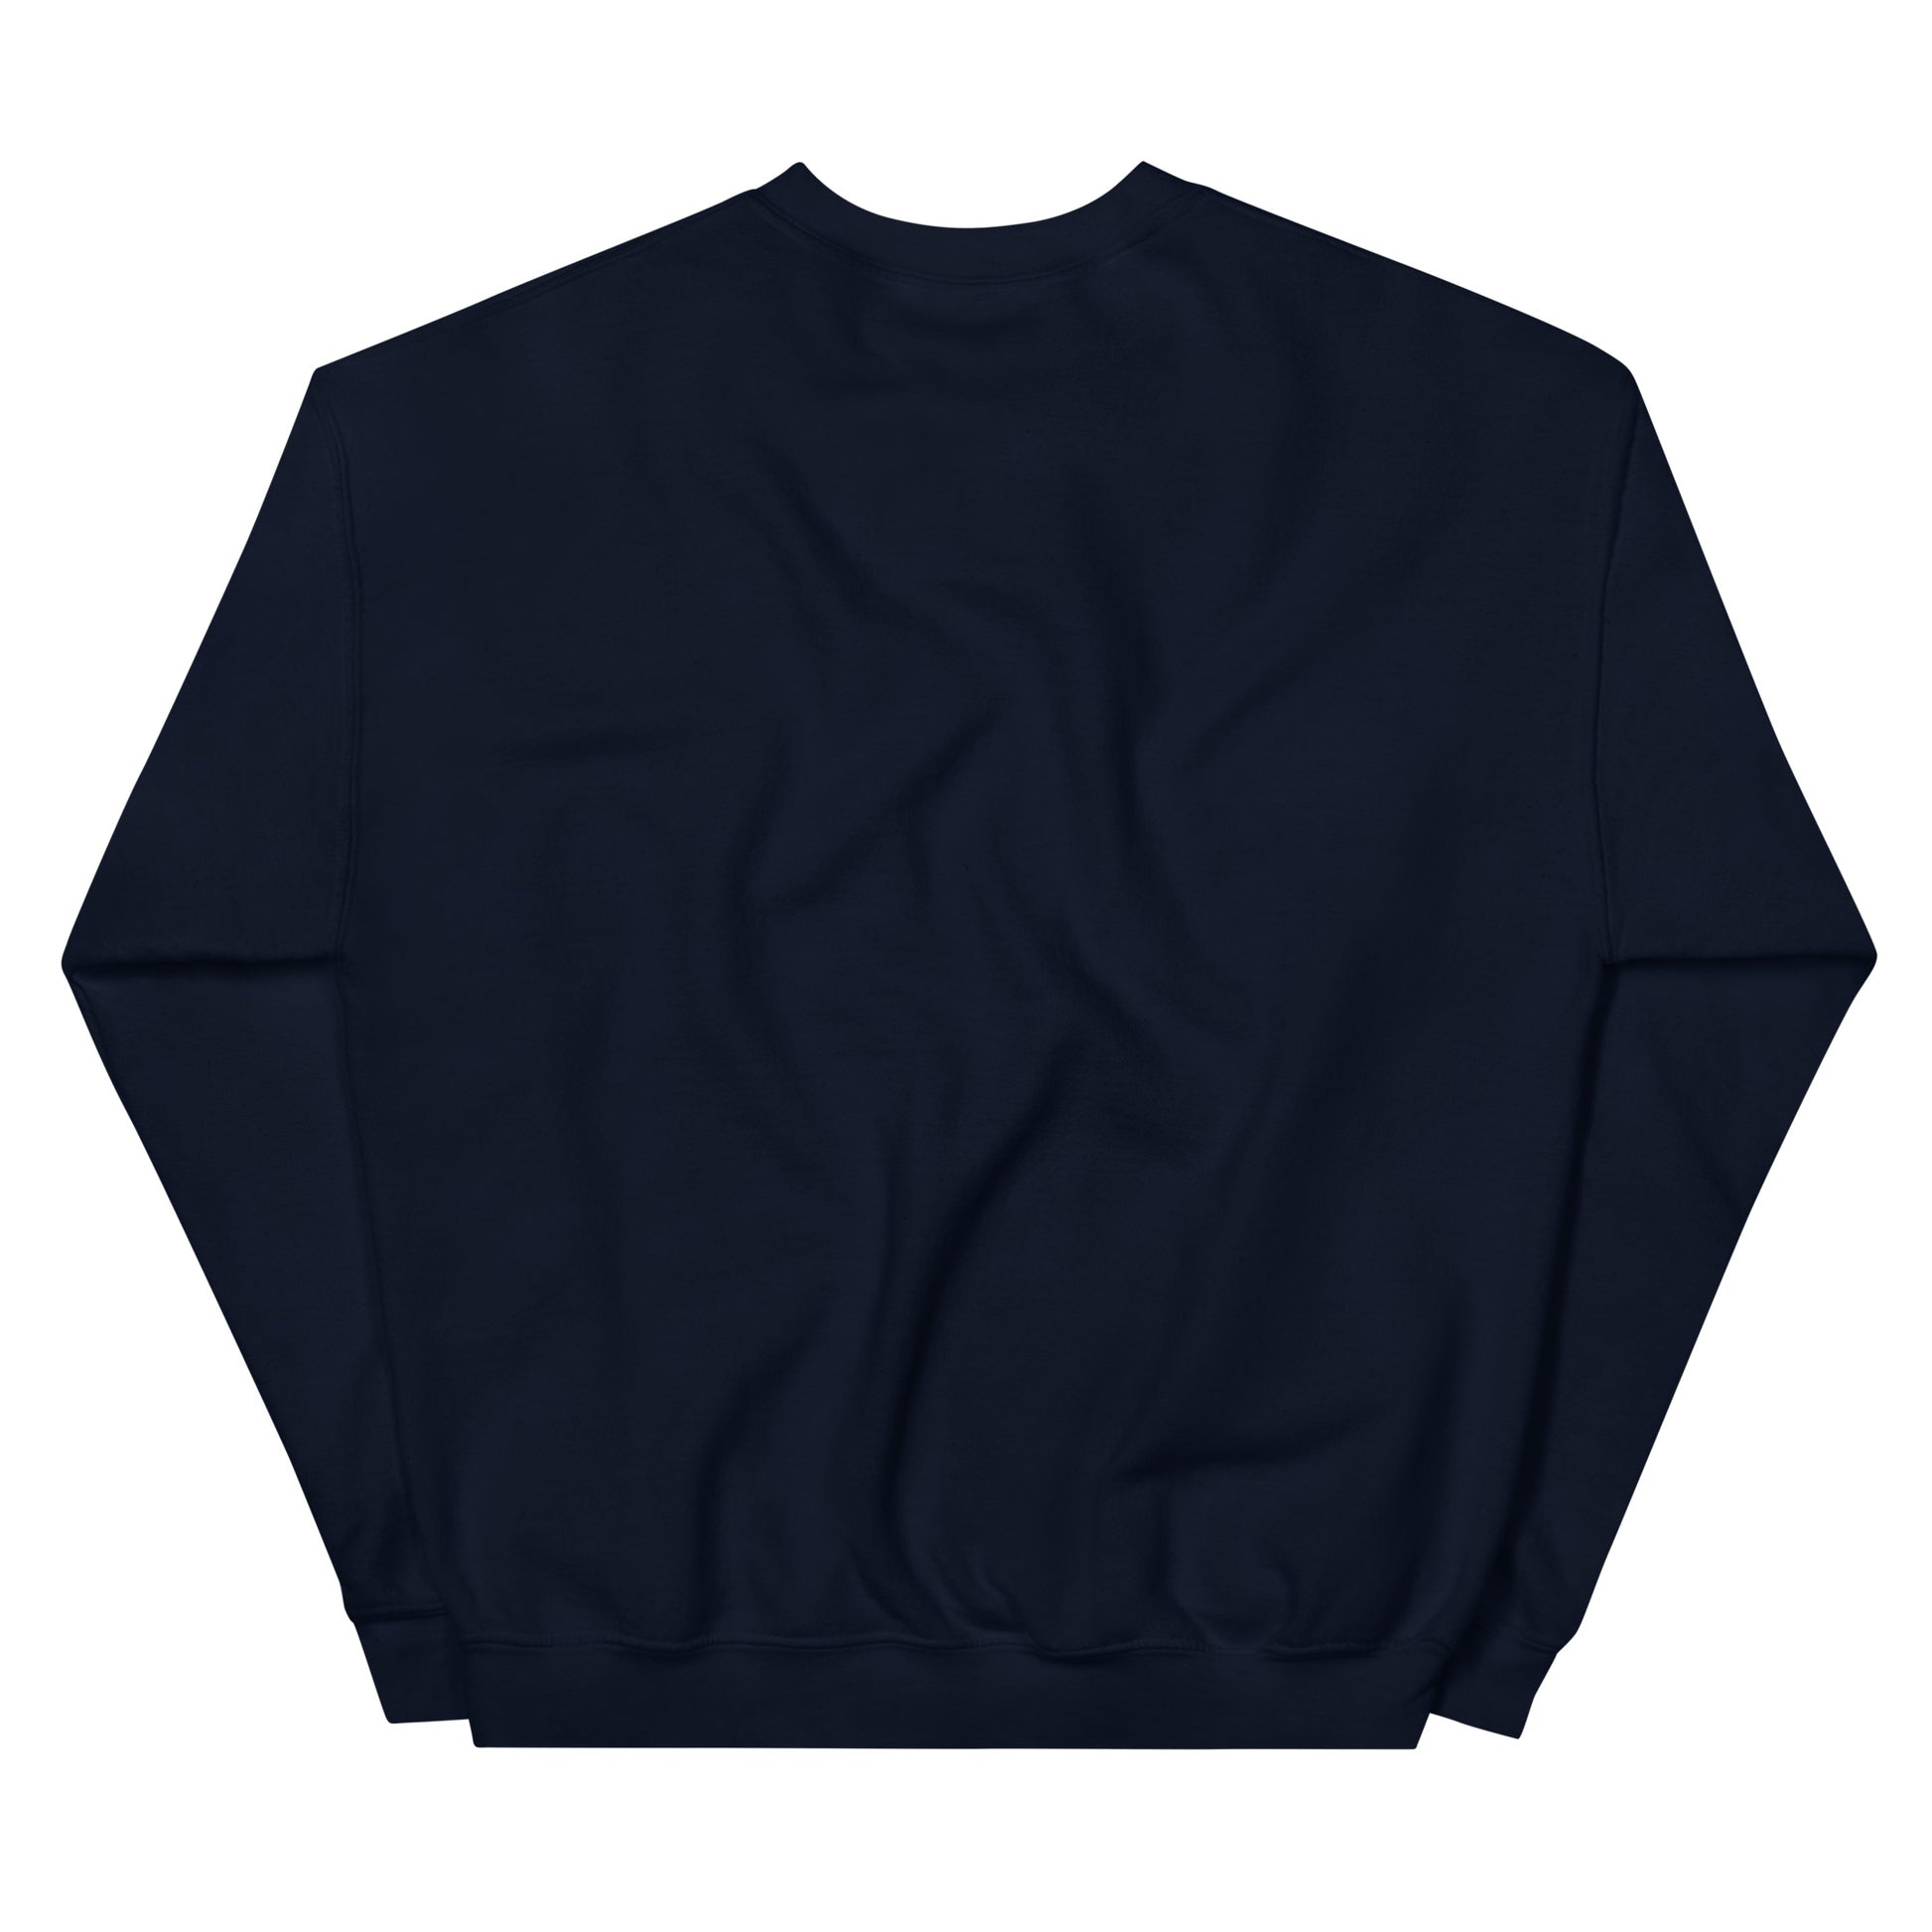 Primitive Unisex Sweatshirt - Official primitive store